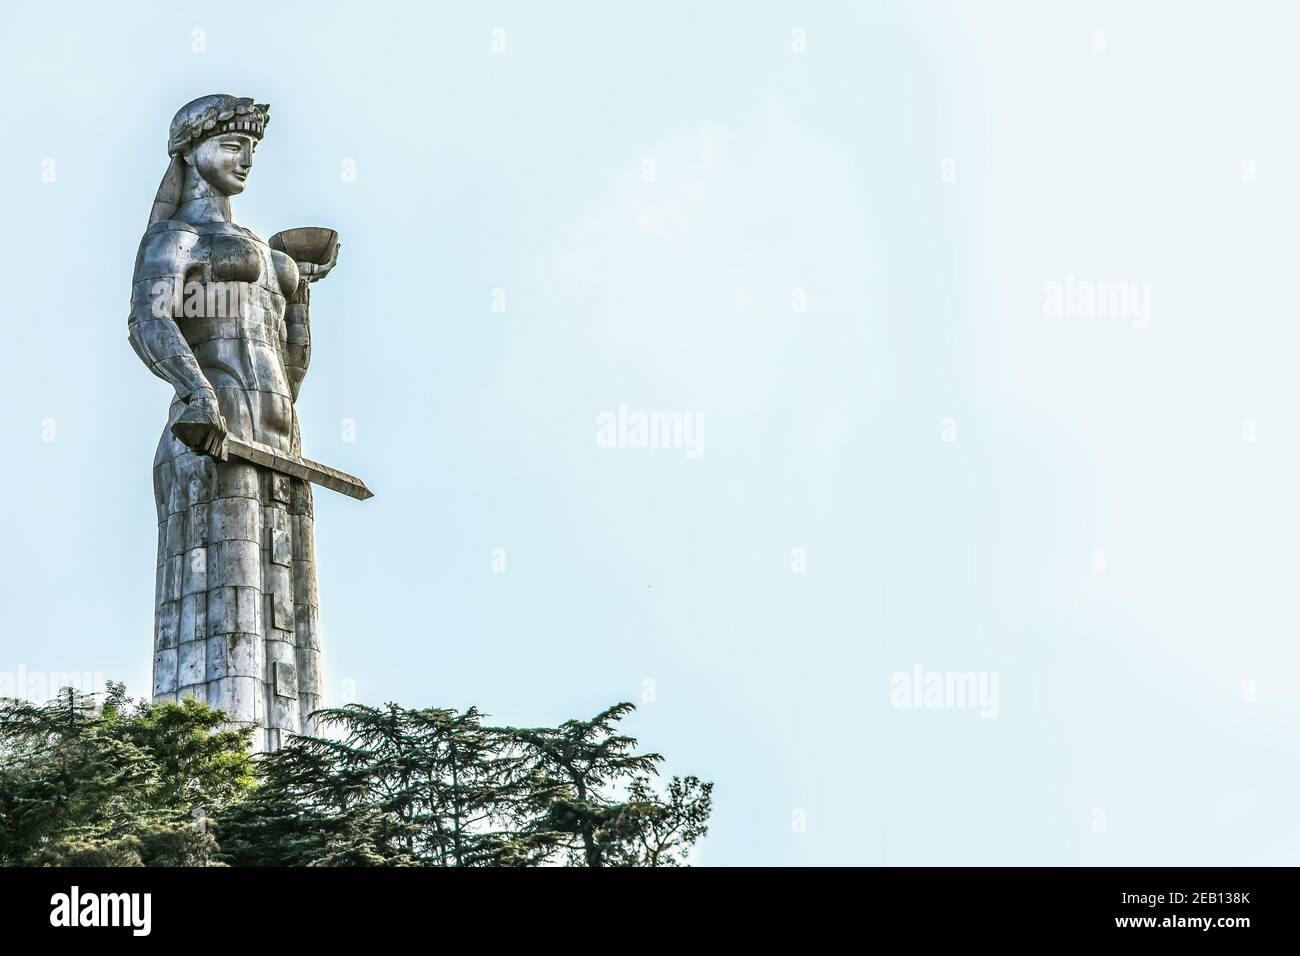 8-5-2019 Tbilisi Georgia - Madre della Georgia - Kartlis Deda - Un monumento a Tbilisi, capitale di Georgias - statua in metallo Sololaki cresta di greetin donna Foto Stock